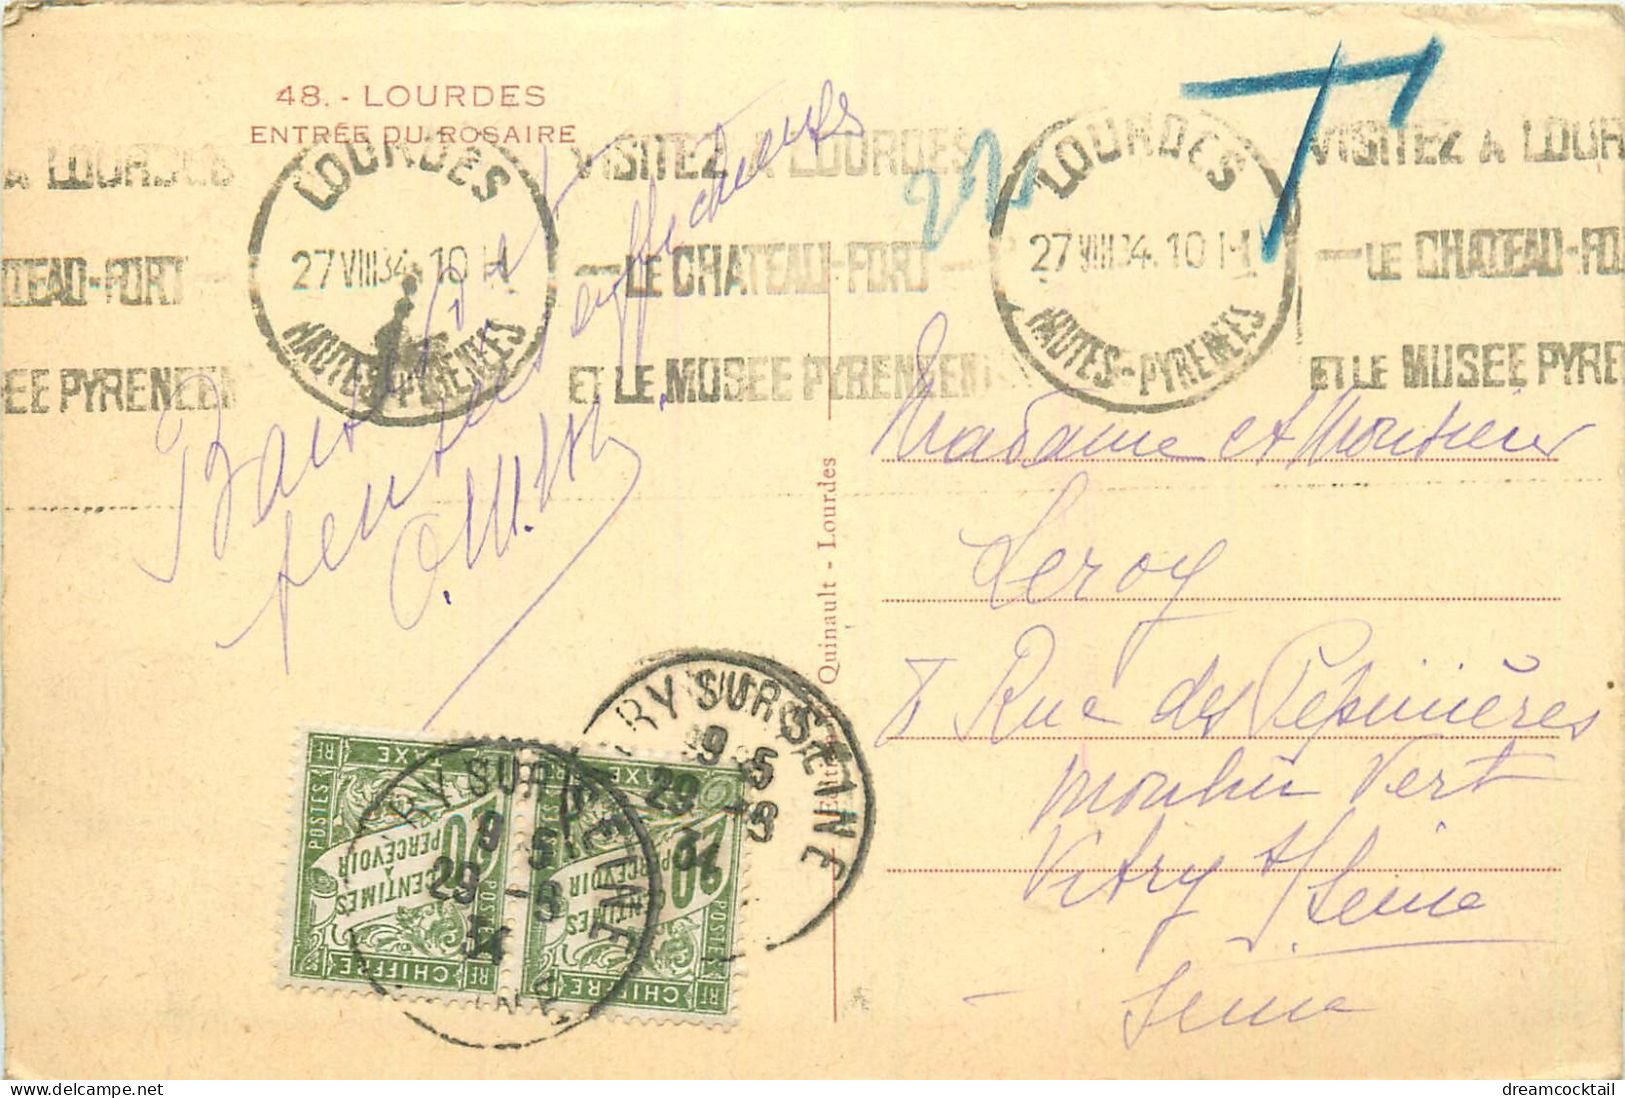 (S) Superbe LOT n°16 de 50 cartes postales anciennes régionalisme dont Châteaux